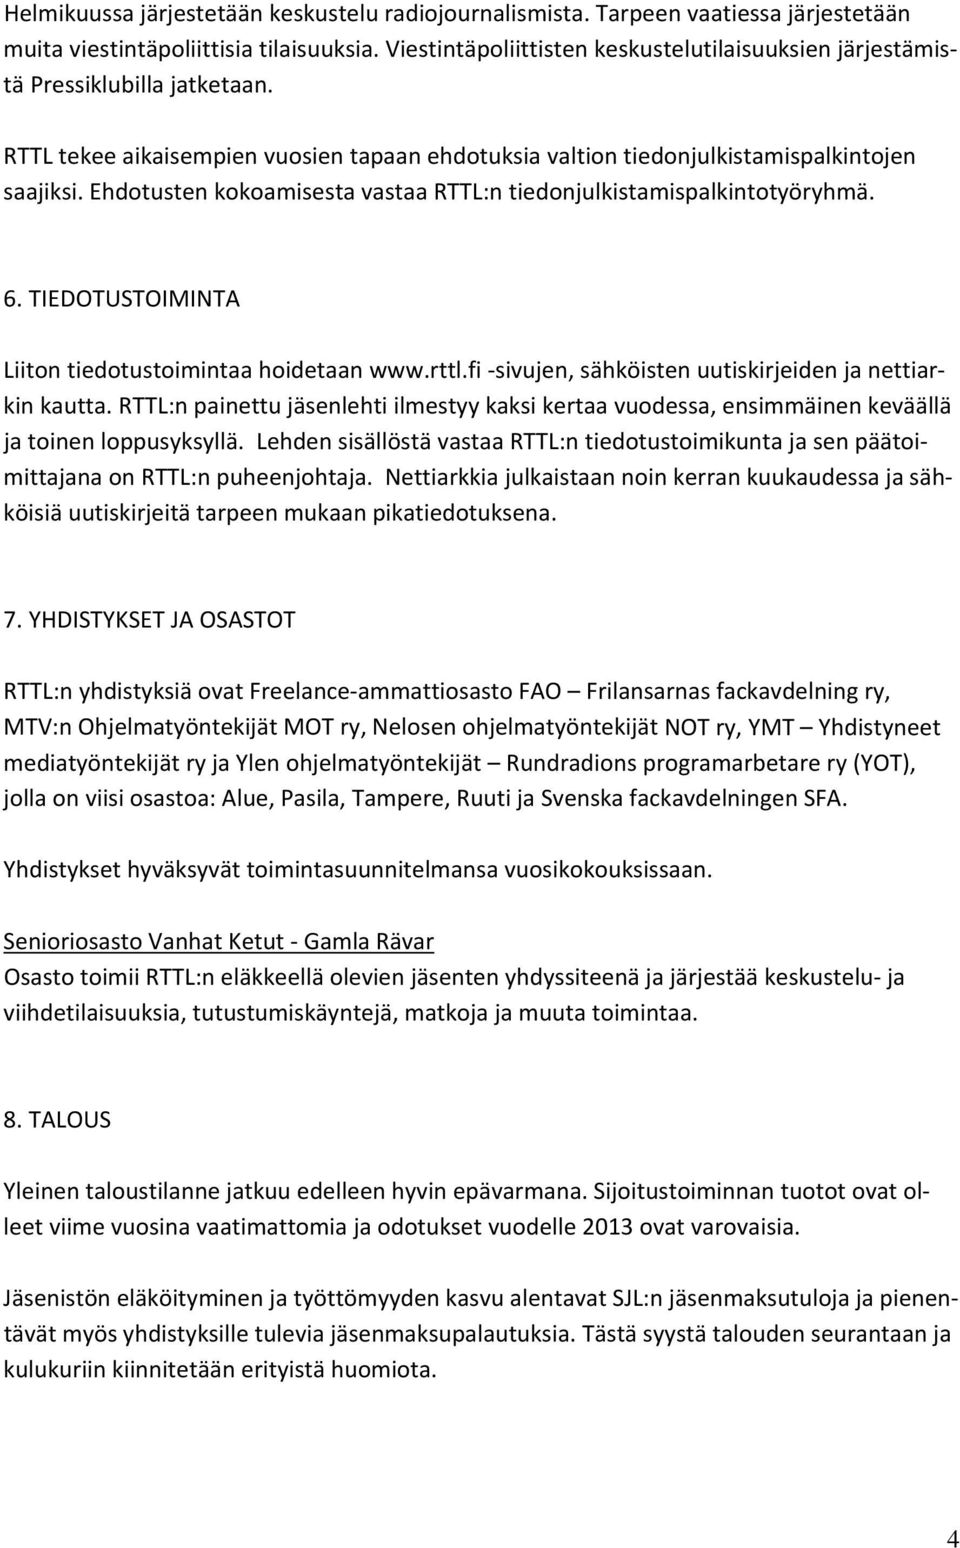 Ehdotusten kokoamisesta vastaa RTTL:n tiedonjulkistamispalkintotyöryhmä. 6. TIEDOTUSTOIMINTA Liiton tiedotustoimintaa hoidetaan www.rttl.fi sivujen, sähköisten uutiskirjeiden ja nettiarkin kautta.